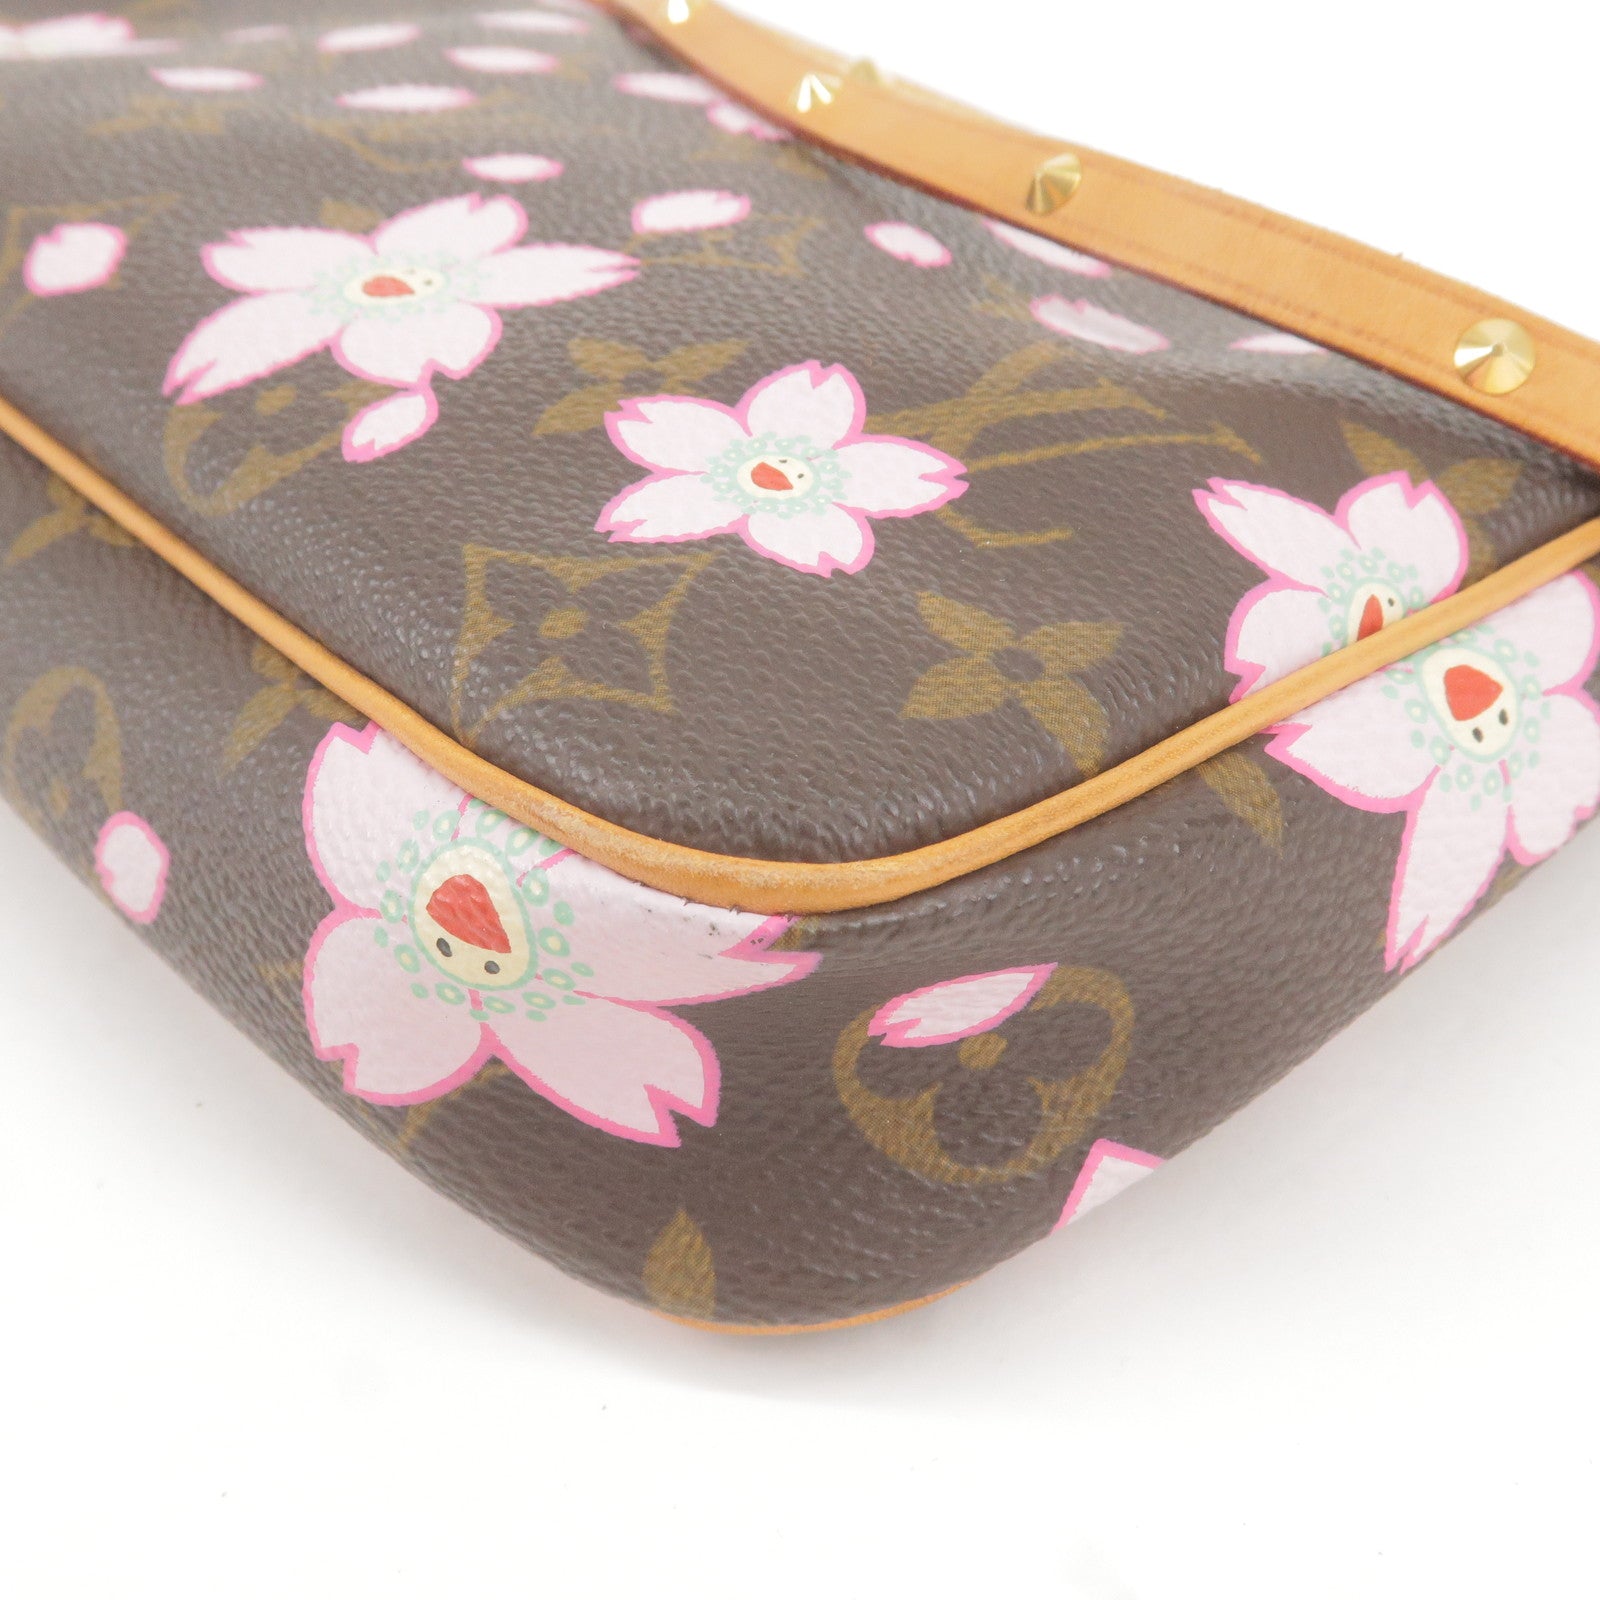 LOUIS VUITTON LV Cherry Blossom Pochette Accessoires Used Pouch Bag M92006  AG331